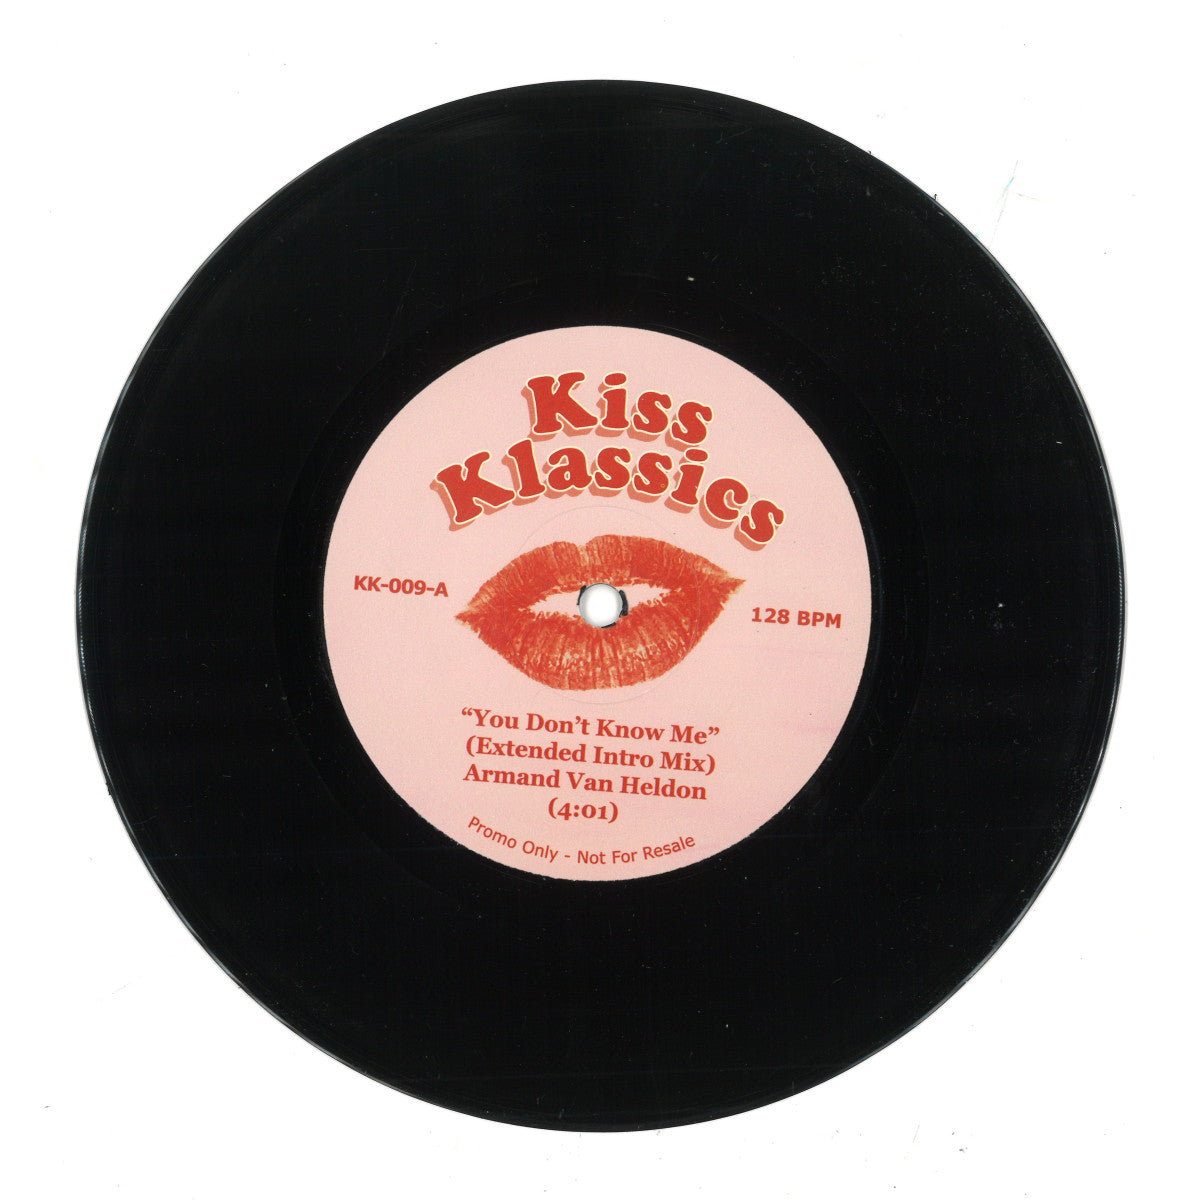 Armand Van Helden - You Don't Know Me [Kiss Klassics]